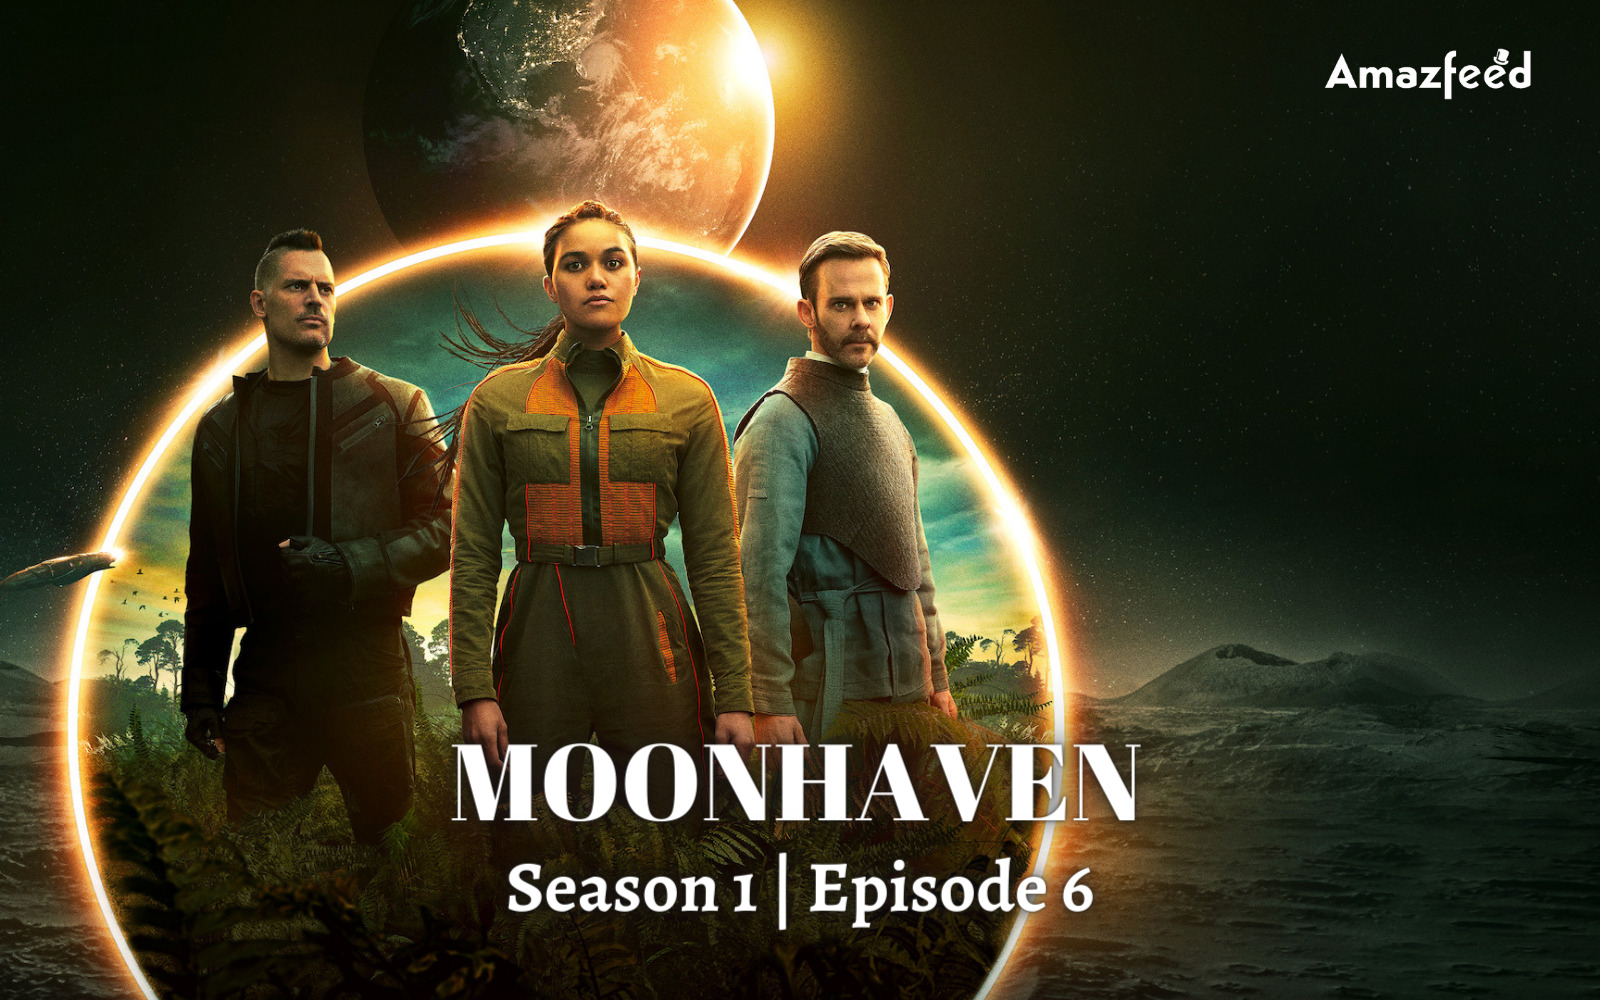 _Moonhaven Season1 Episode 6 Release Date